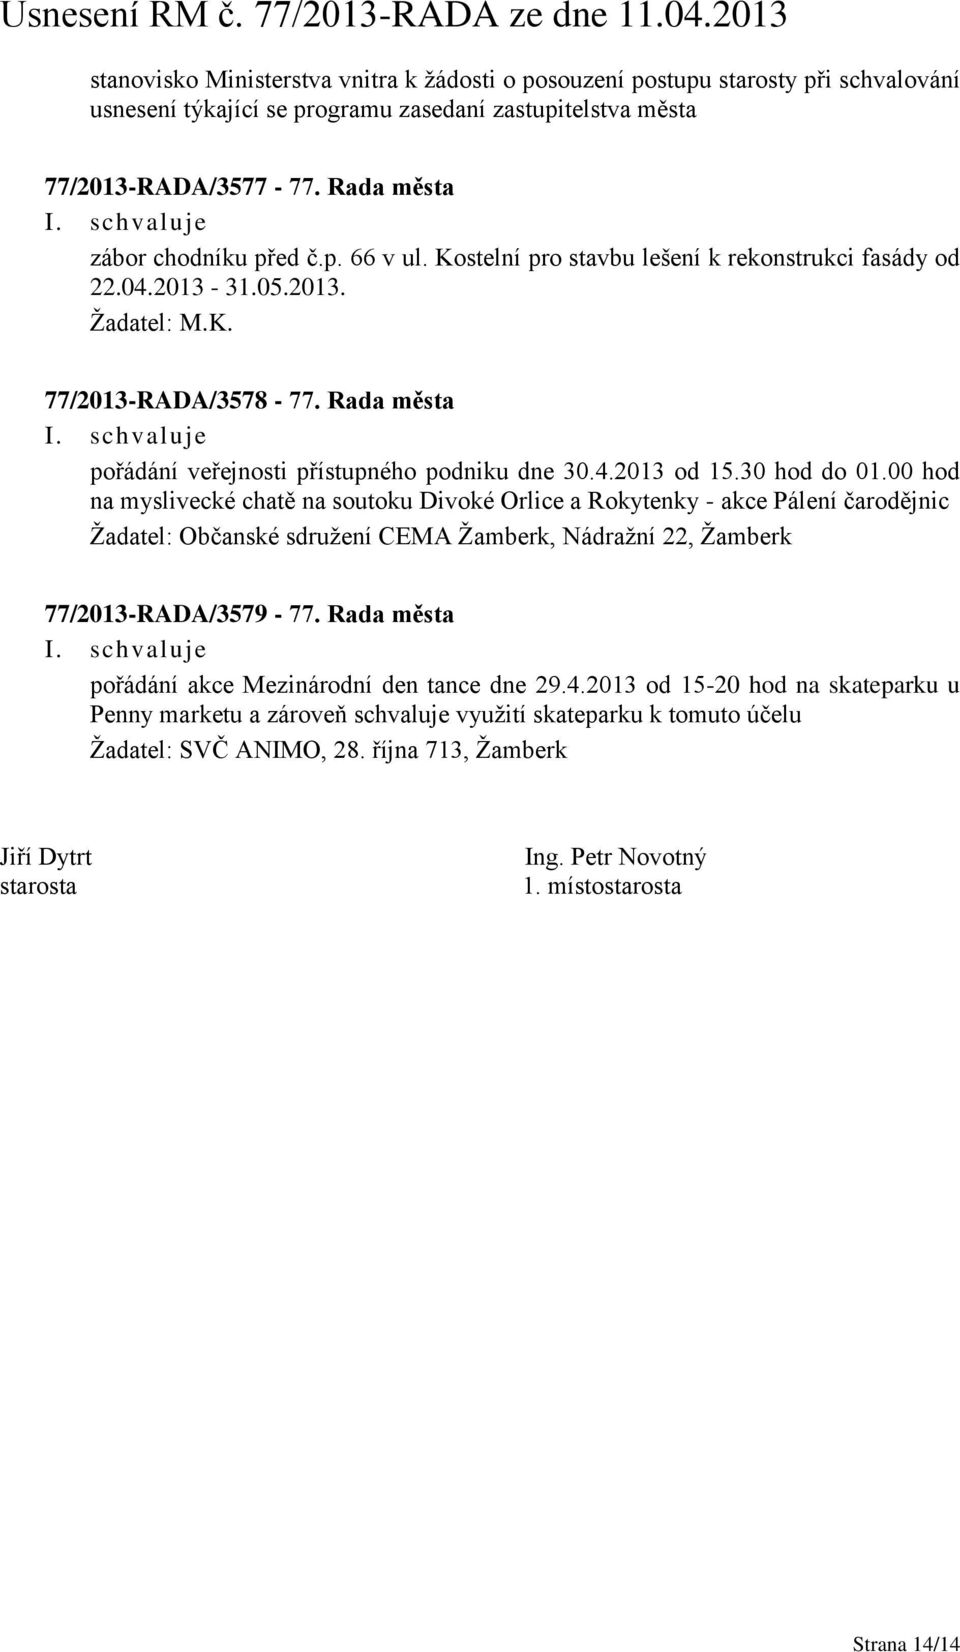 Rada města pořádání veřejnosti přístupného podniku dne 30.4.2013 od 15.30 hod do 01.